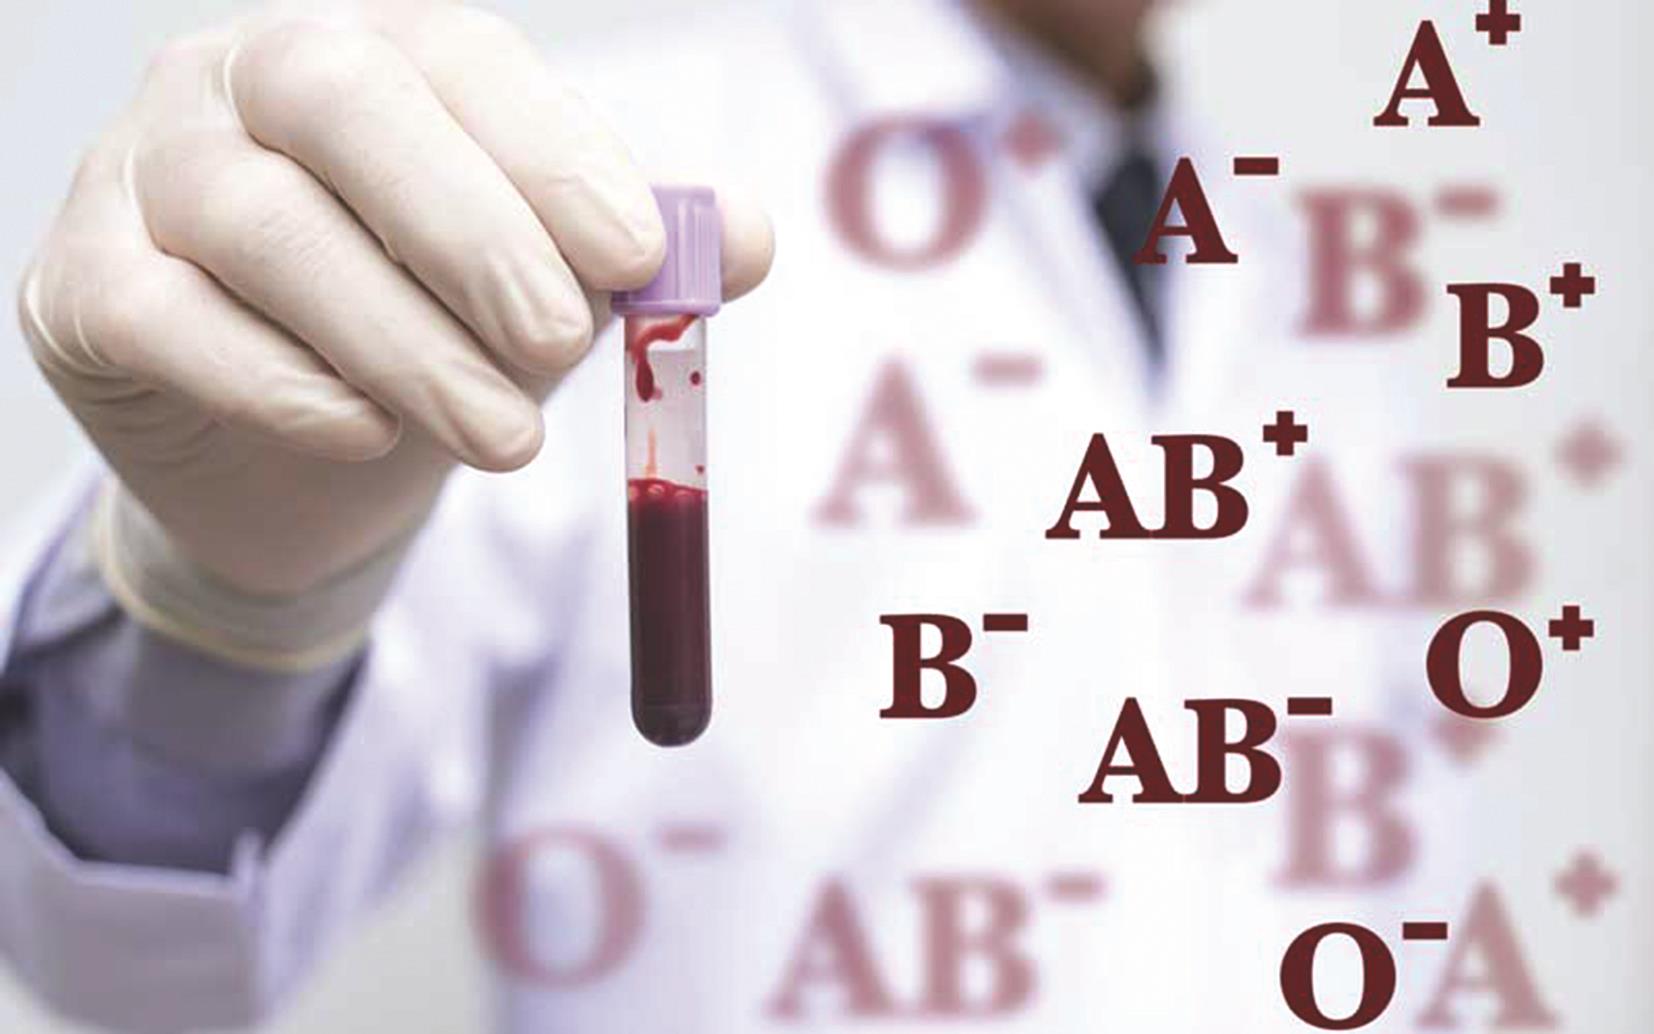 دراسة علمية حديثة تؤكد أن فصيلة الدم لها علاقة بالإصابة أو الوفاة بكورونا